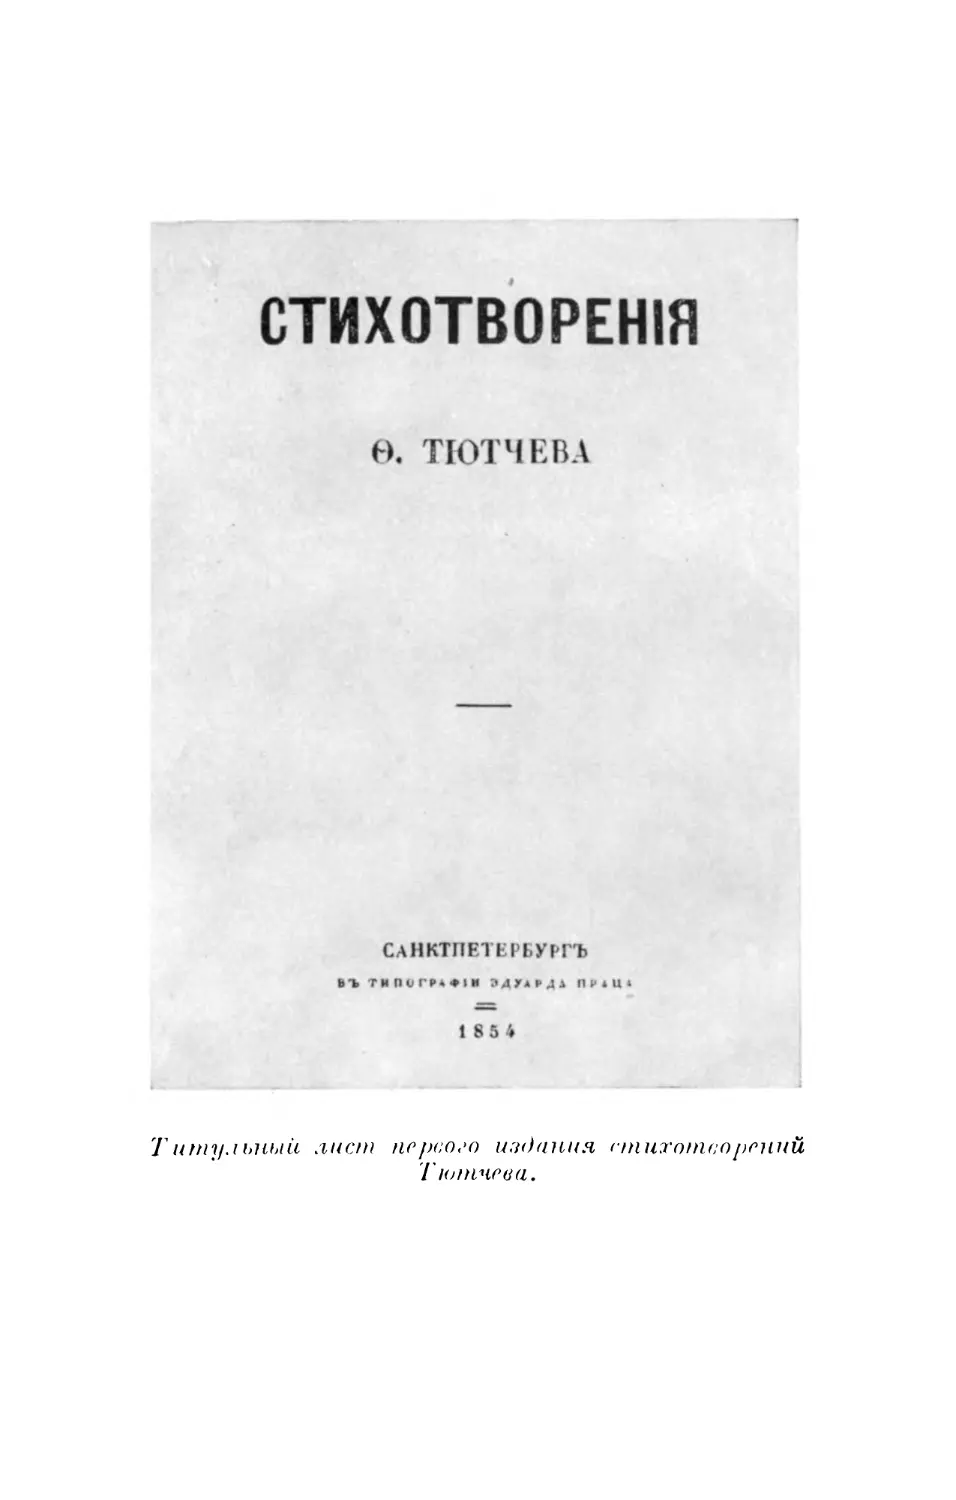 Вклейка. Титульный лист первого издания стихотворений Тютчева.